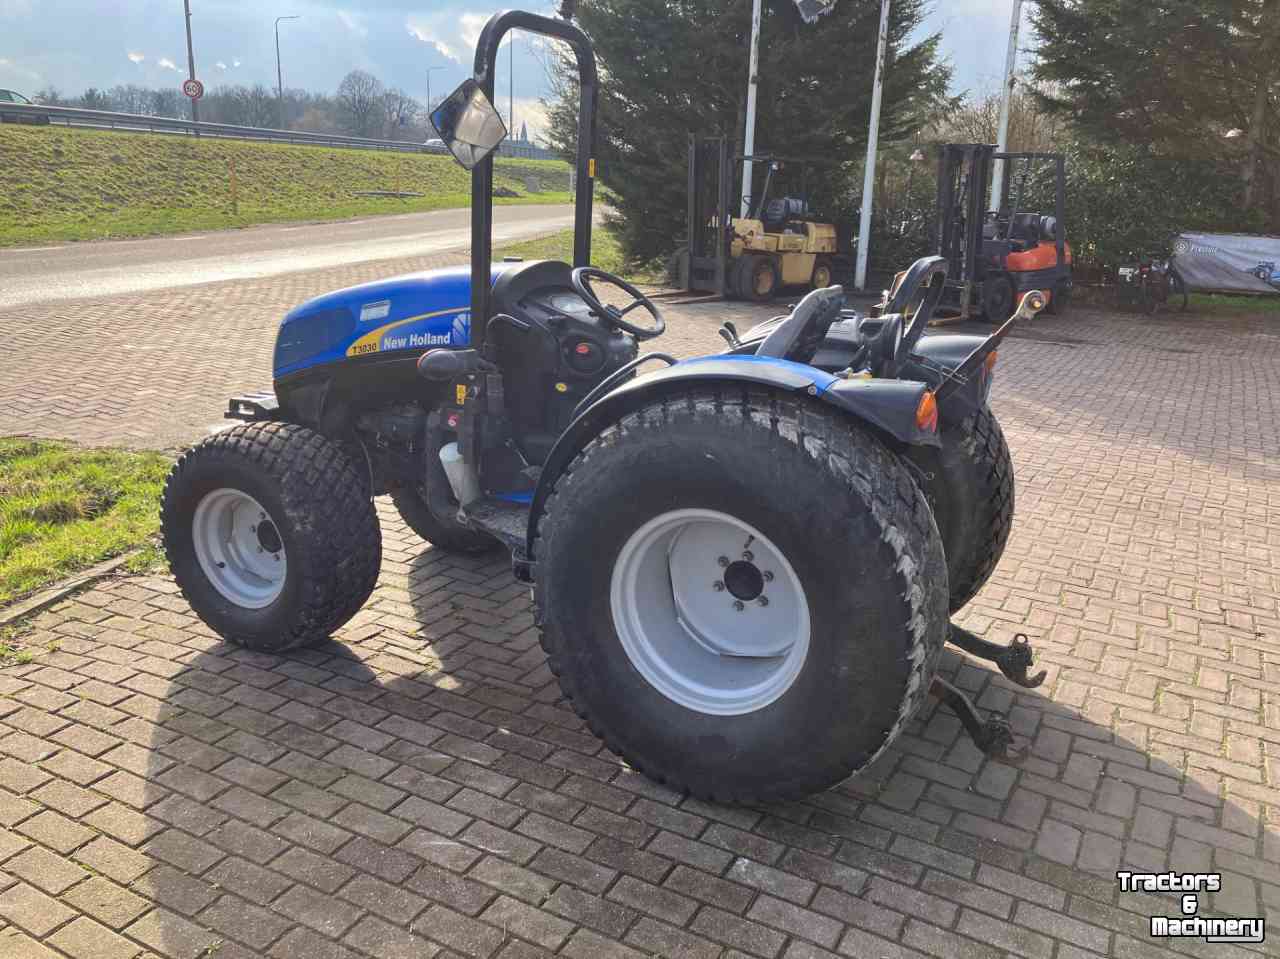 Horticultural Tractors New Holland T3030